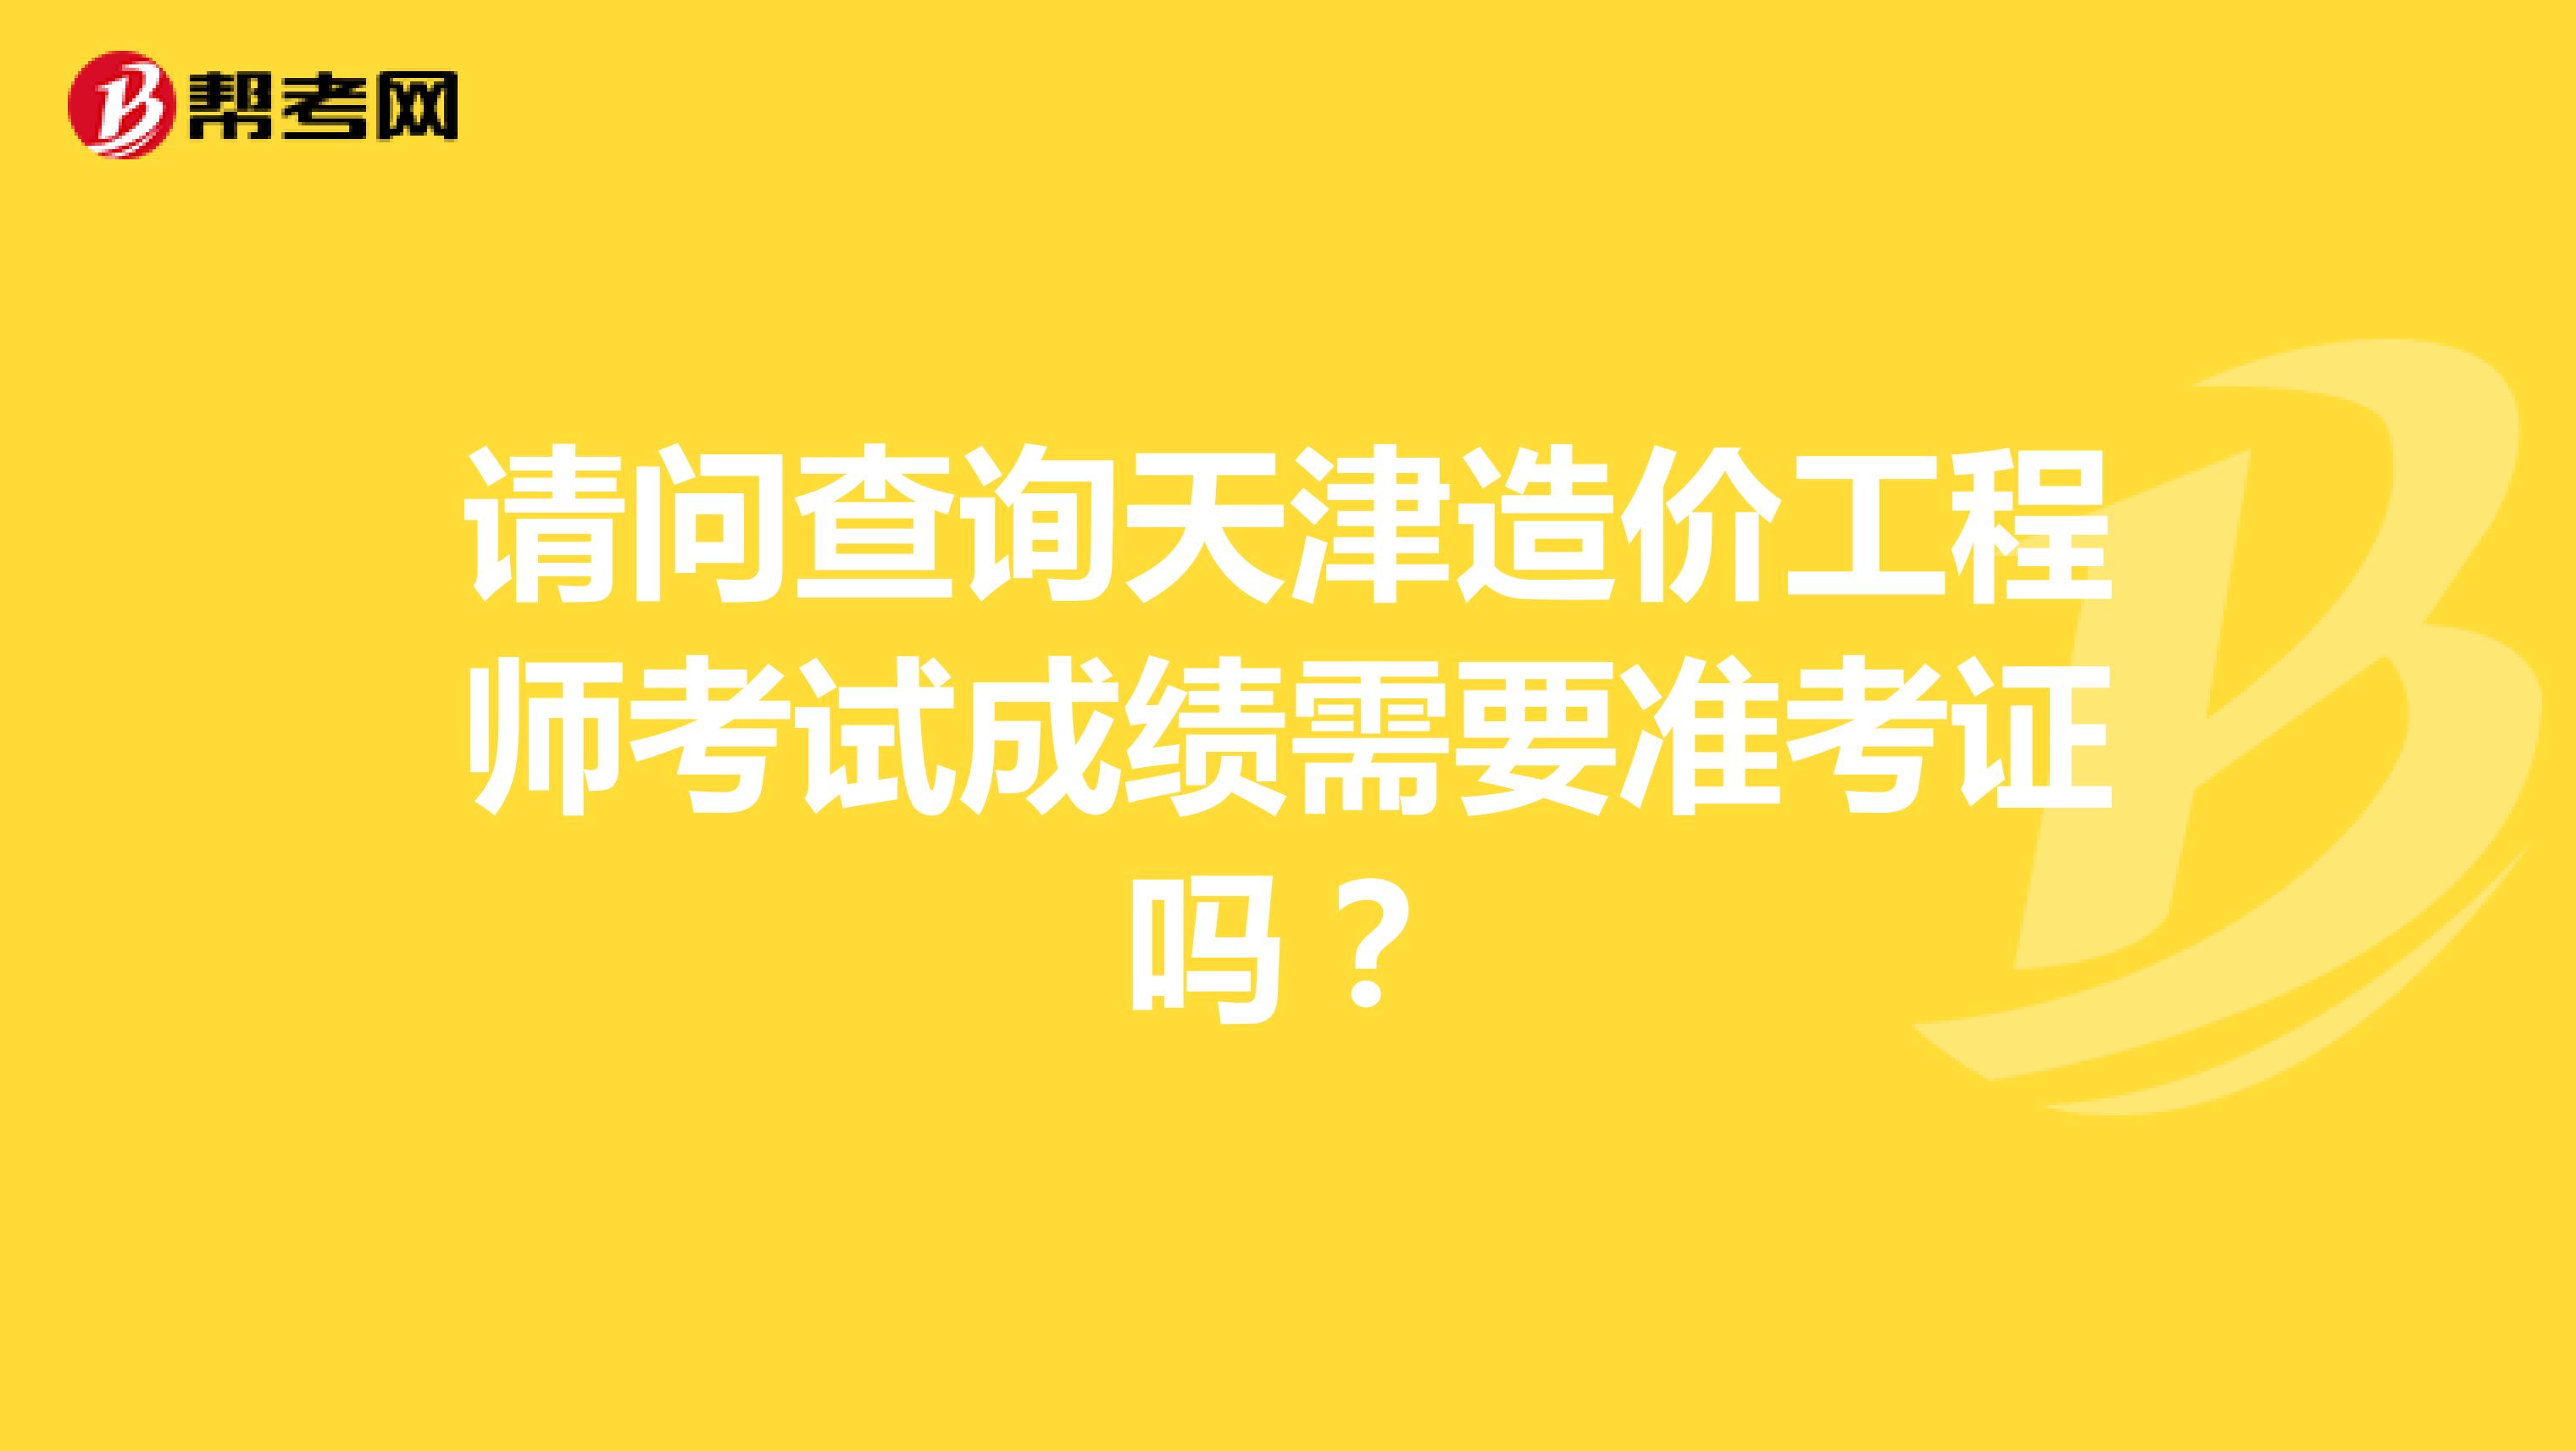 请问查询天津造价工程师考试成绩需要准考证吗？